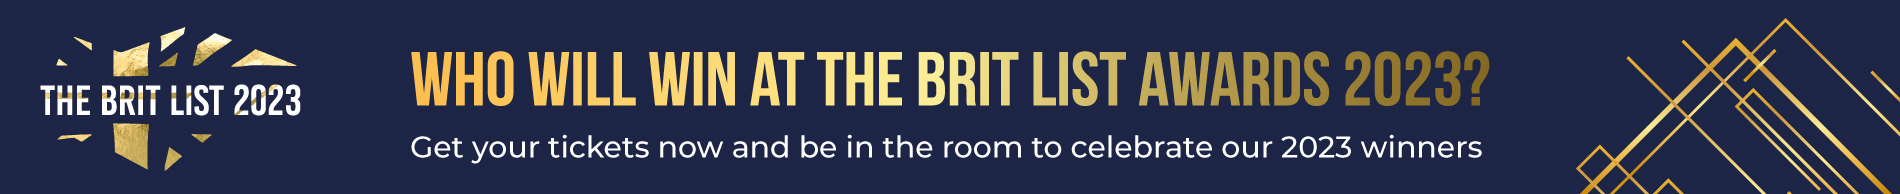 hd-brit-list-banner-advert